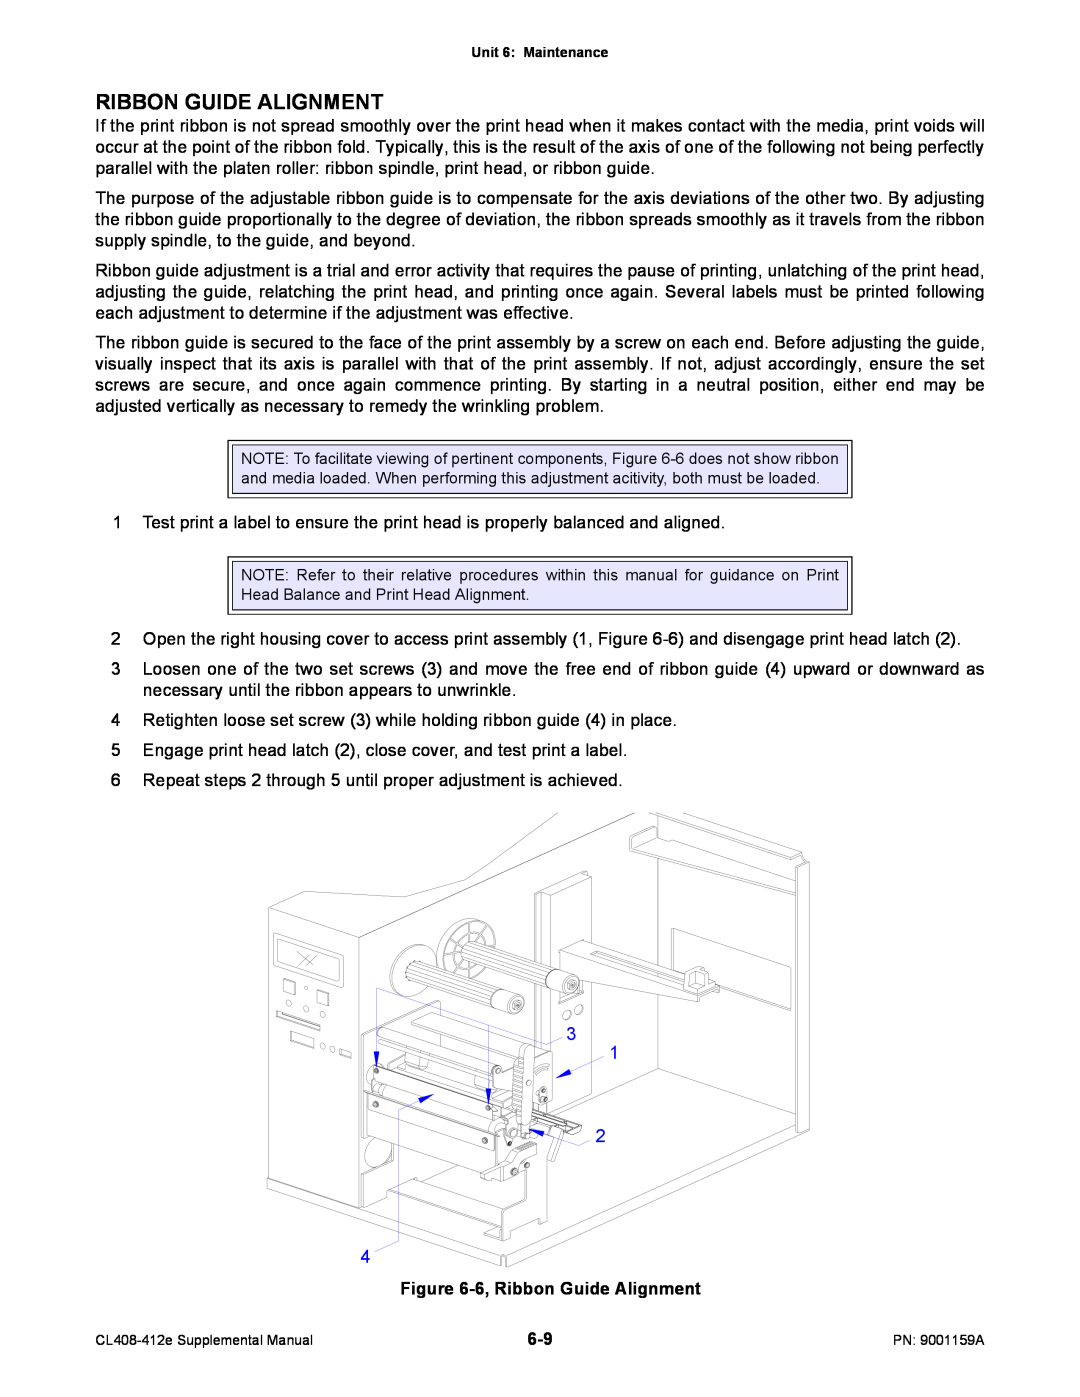 SATO CL408-412e manual 6, Ribbon Guide Alignment 